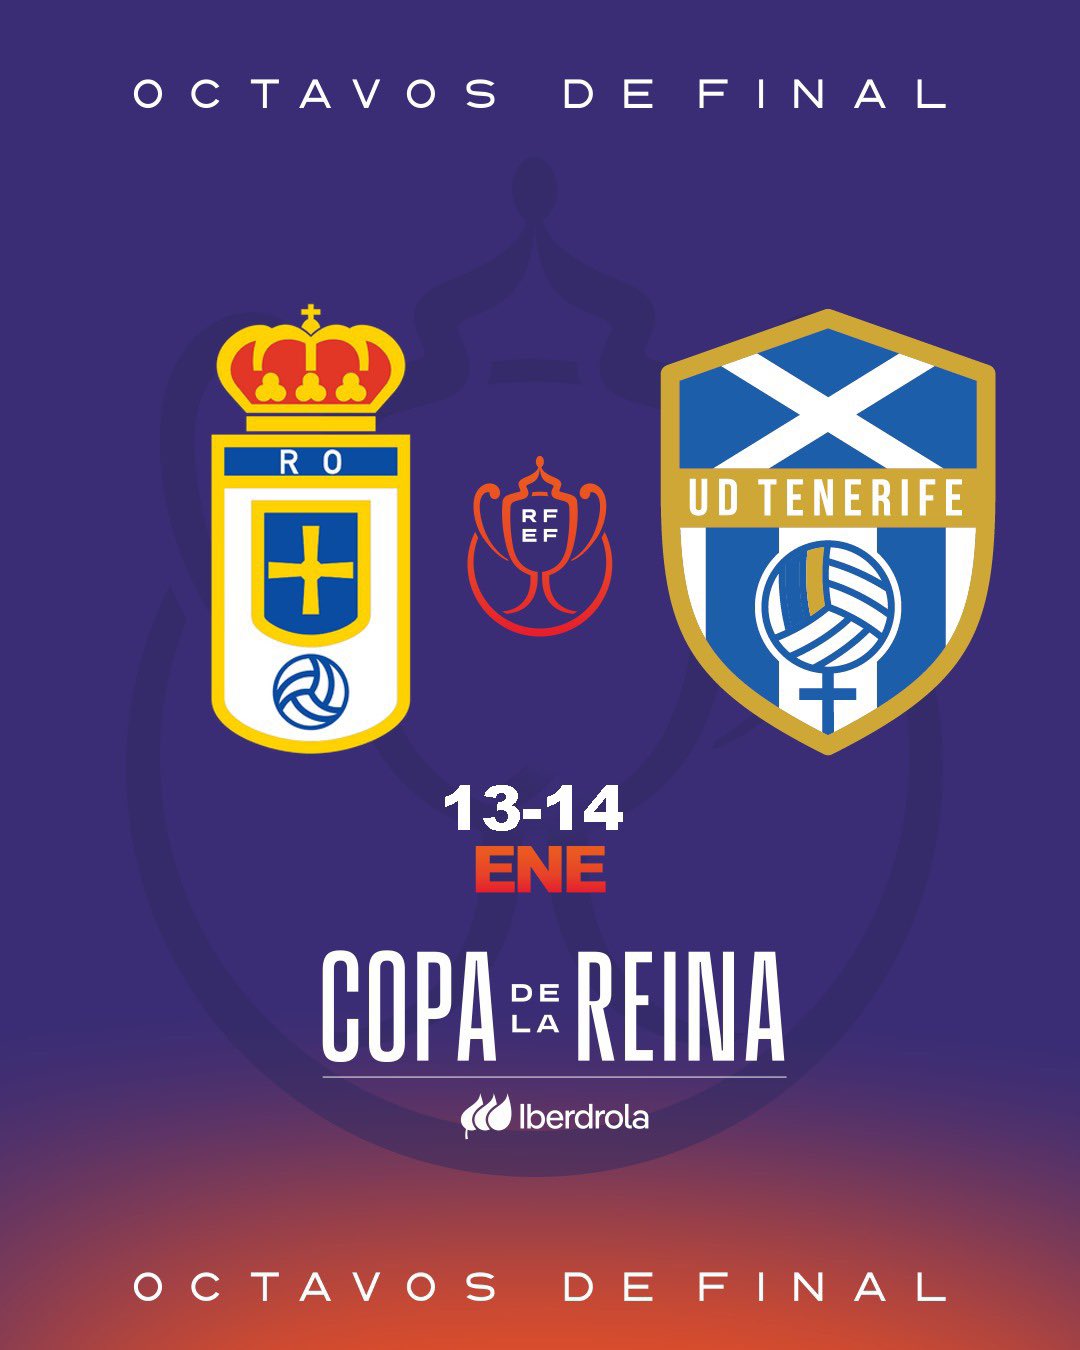 La UDCA Tenerife ya conoce a su primer rival copero: el Real Oviedo de 2ª RFEF